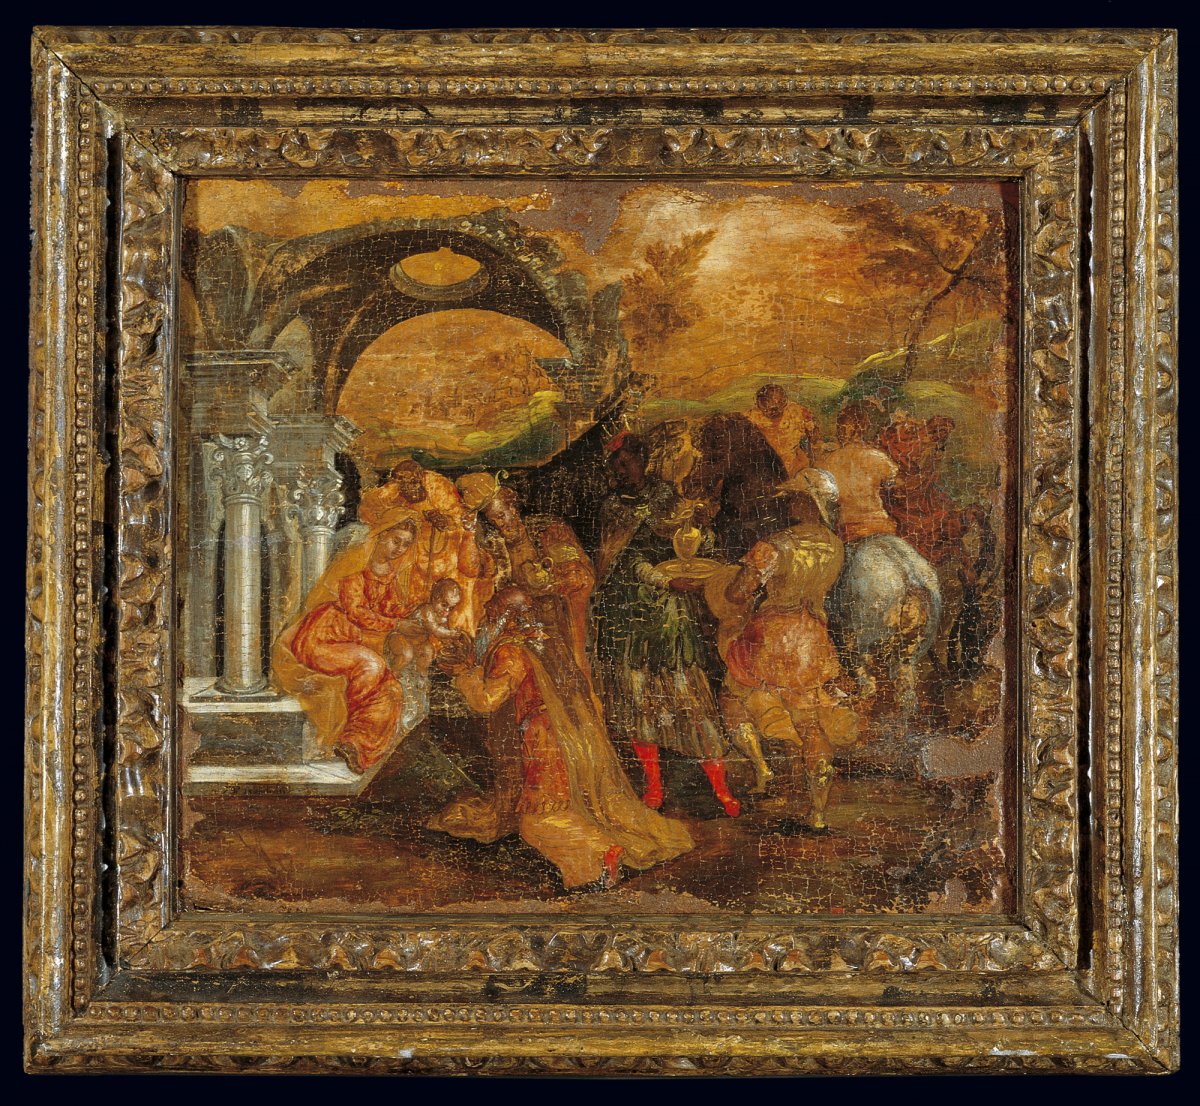 Η Προσκύνηση των Μάγων, 1565-1567-Δομήνικος Θεοτοκόπουλος. Μουσείο Μπενάκη, Αρ. Ευρ. 3048.